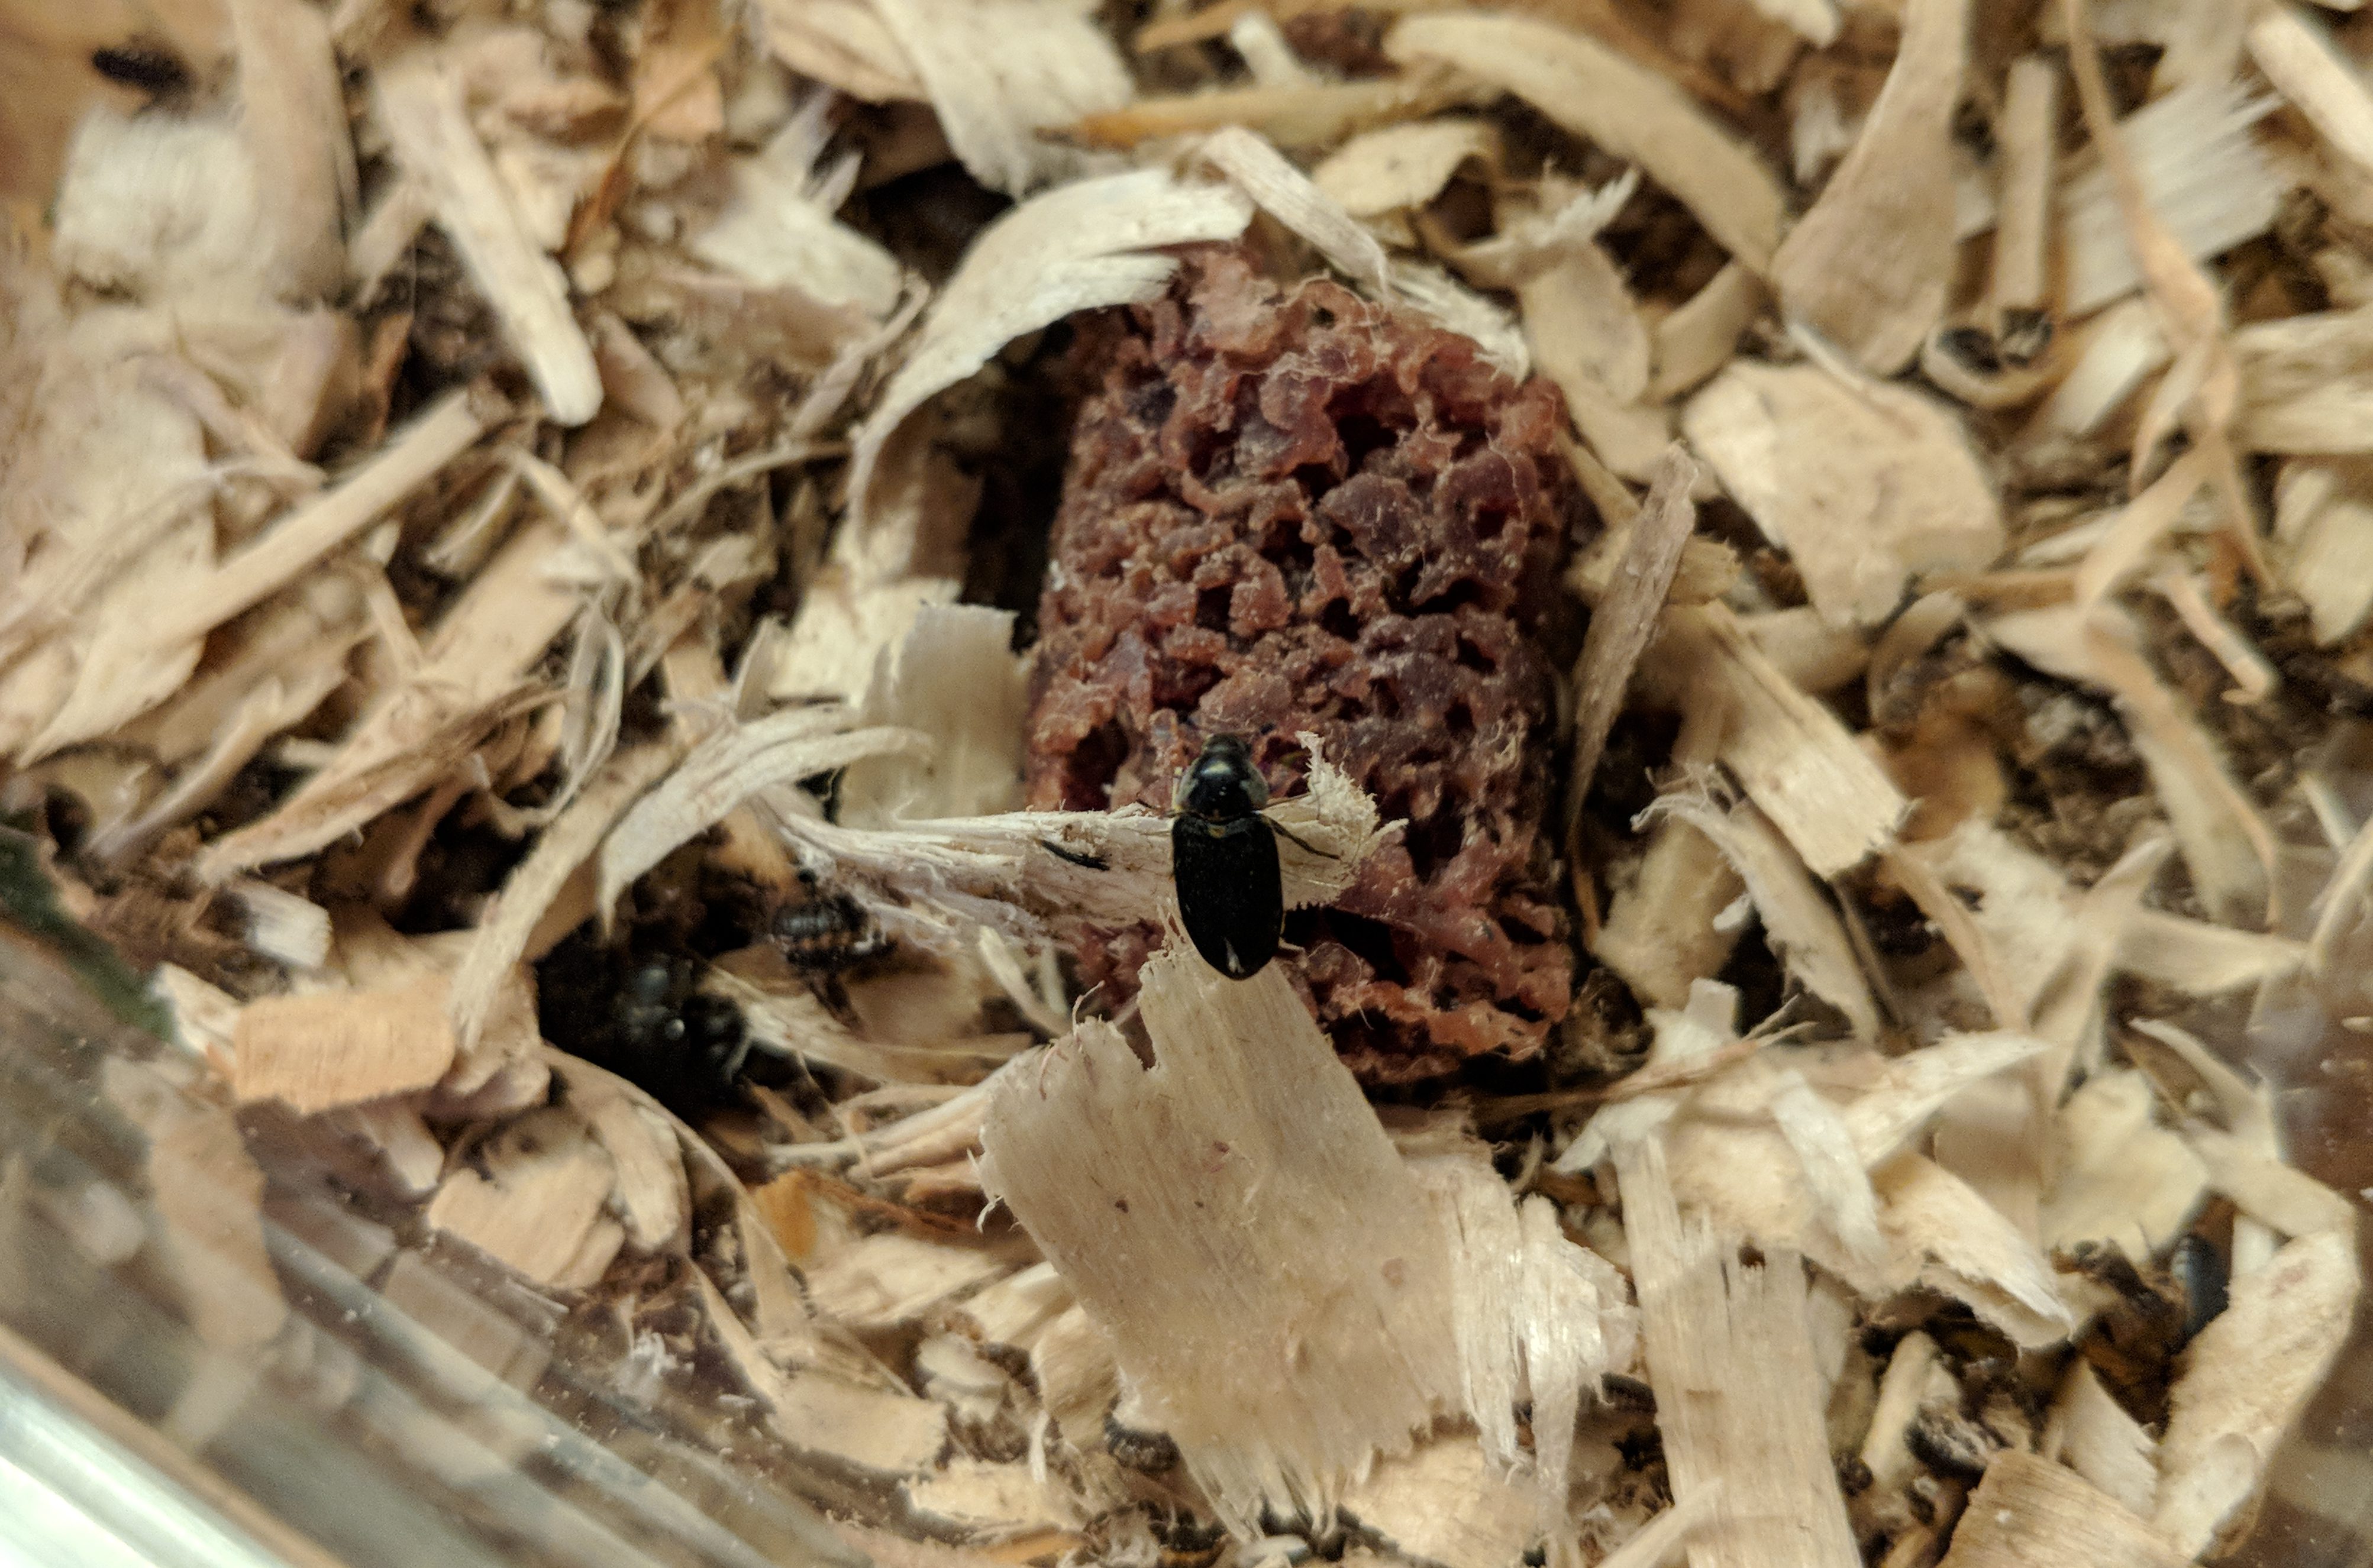 Dermestid Beetles Eating a Hot Dog | Dermestidarium Skull Cleaning